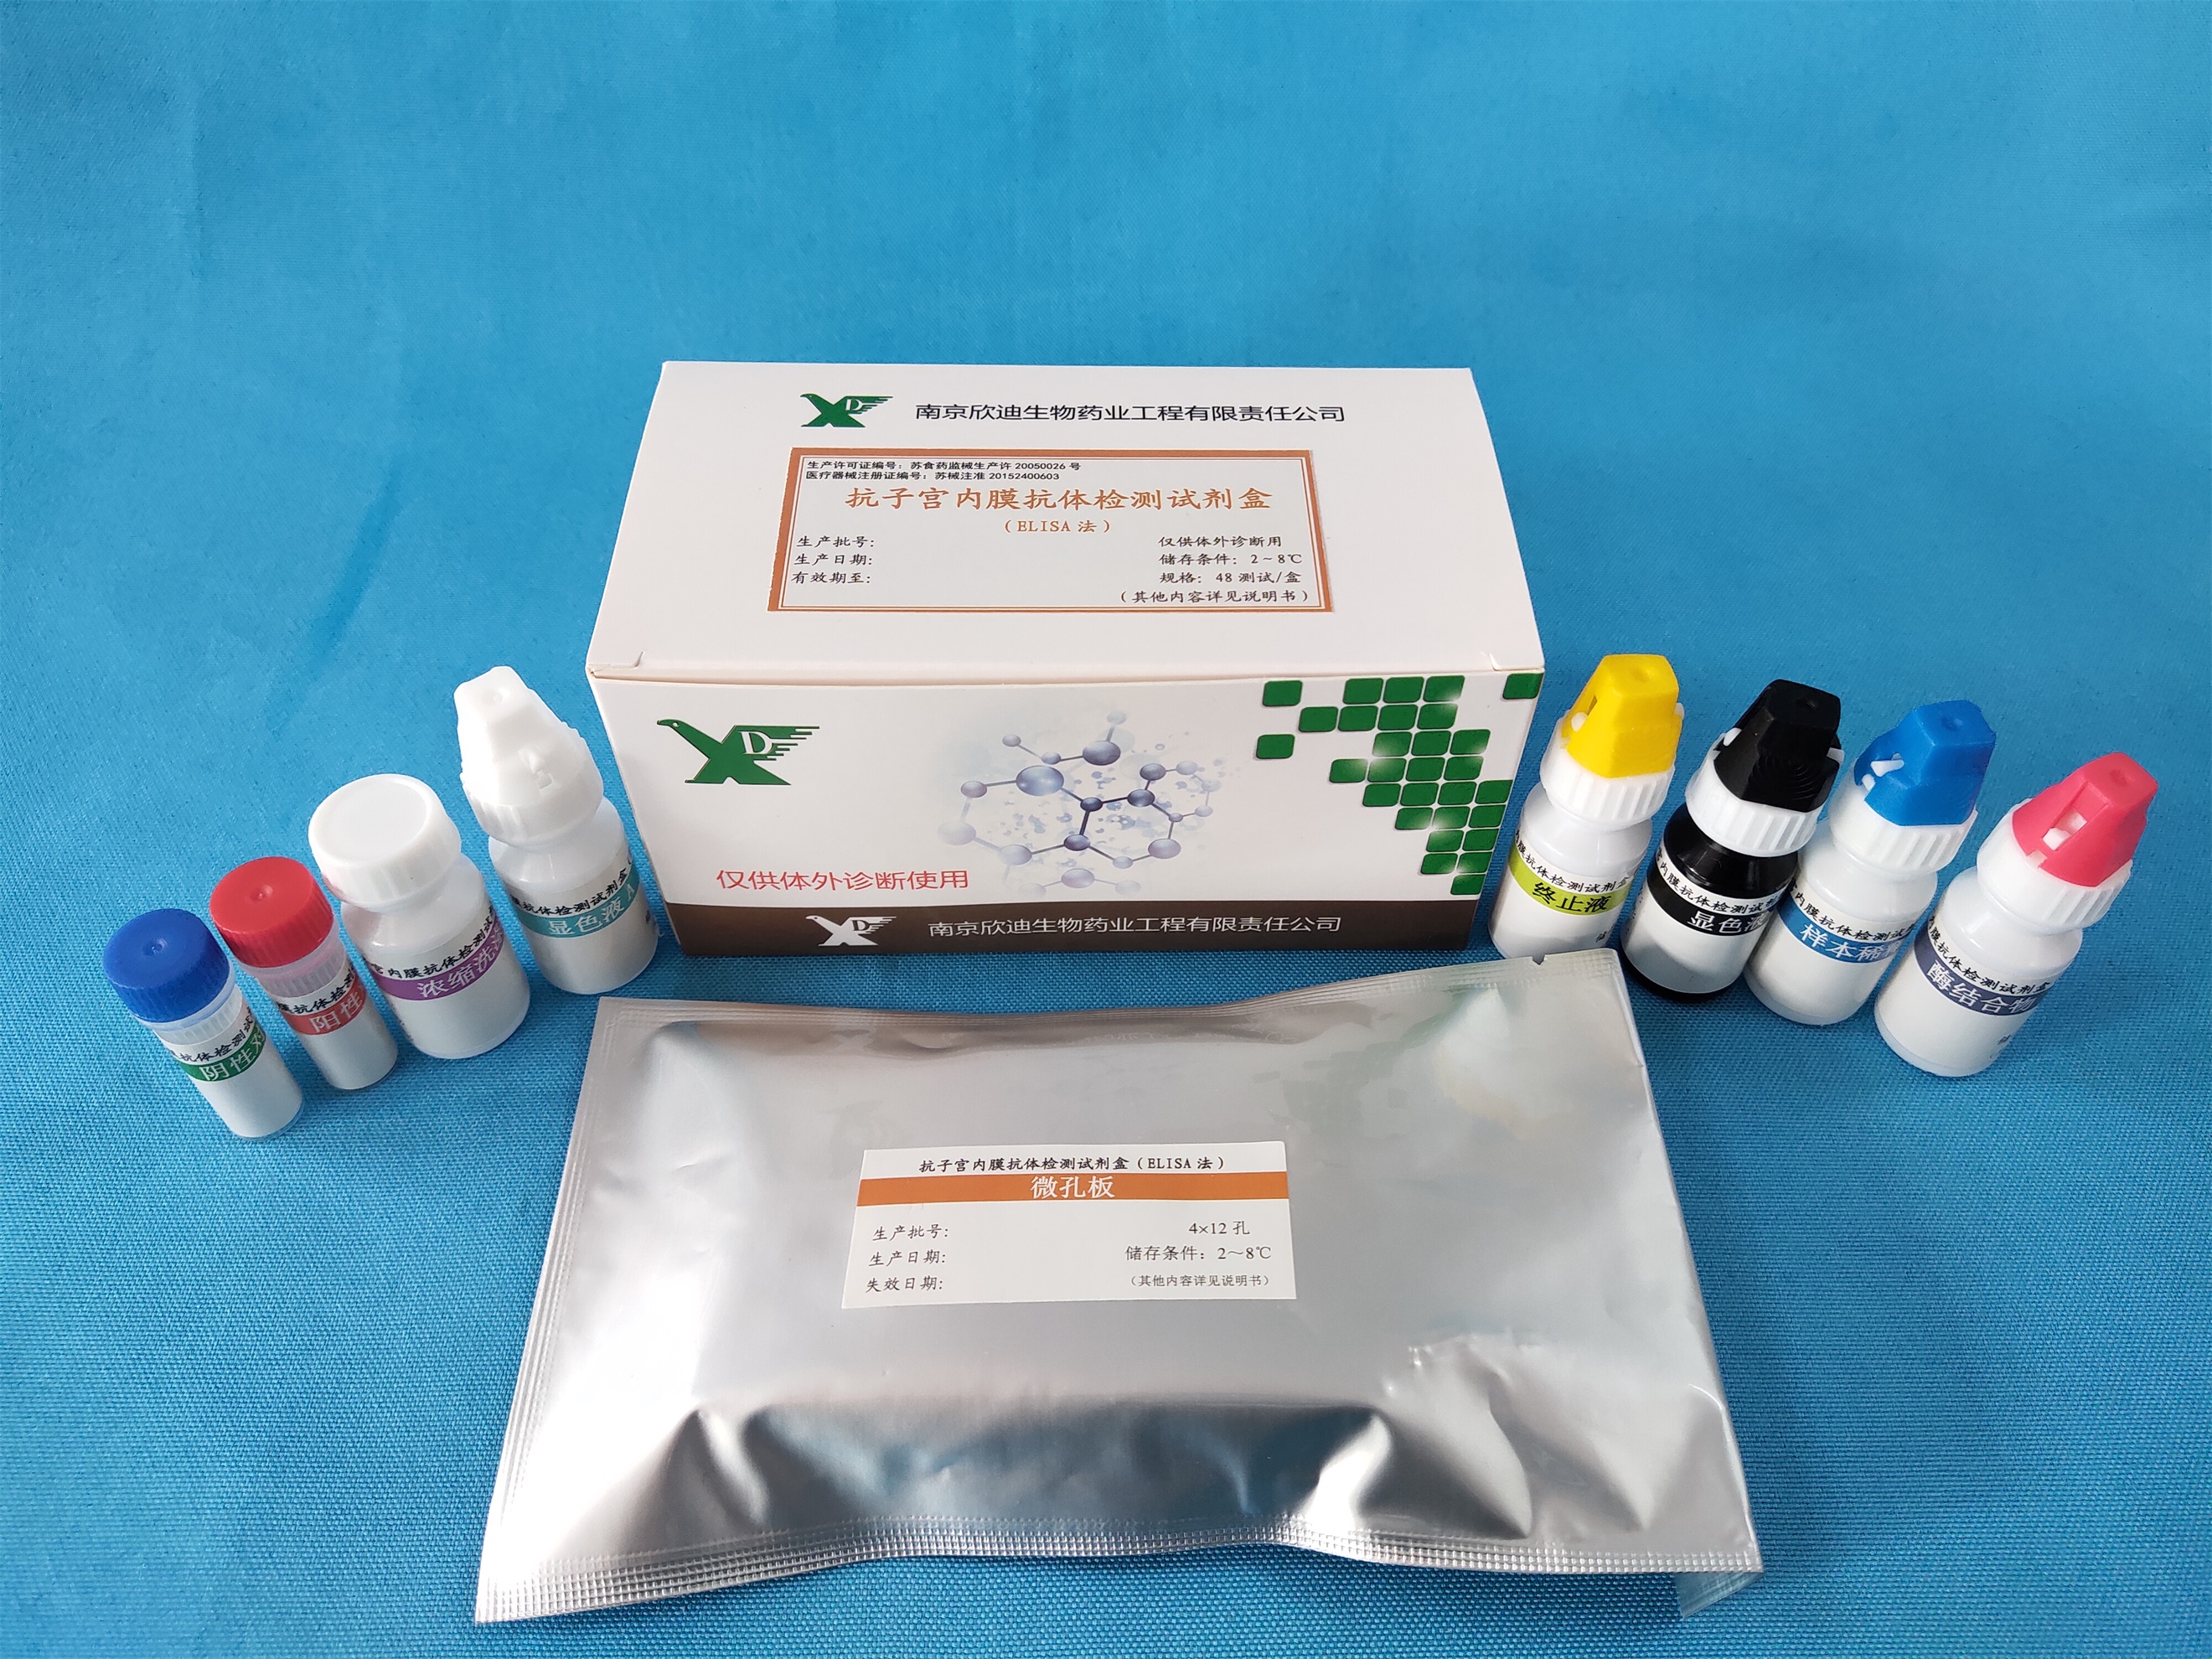 【欣迪】抗子宫内膜抗体检测试剂盒(ELISA法)